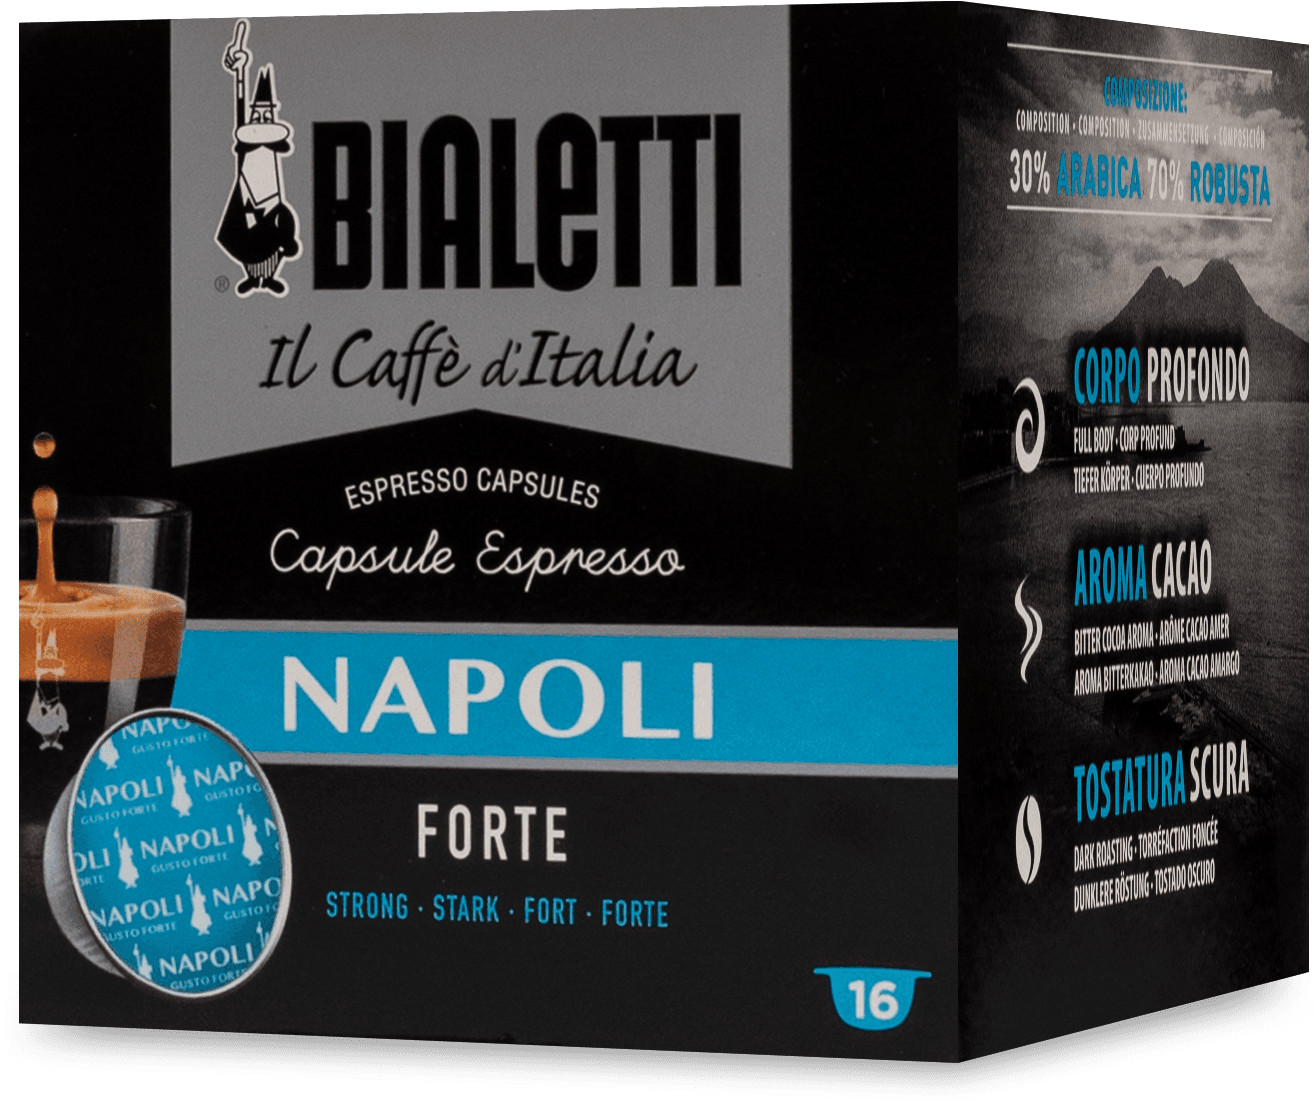 Bialetti Napoli (16 capsule espresso) a € 3,90 (oggi)